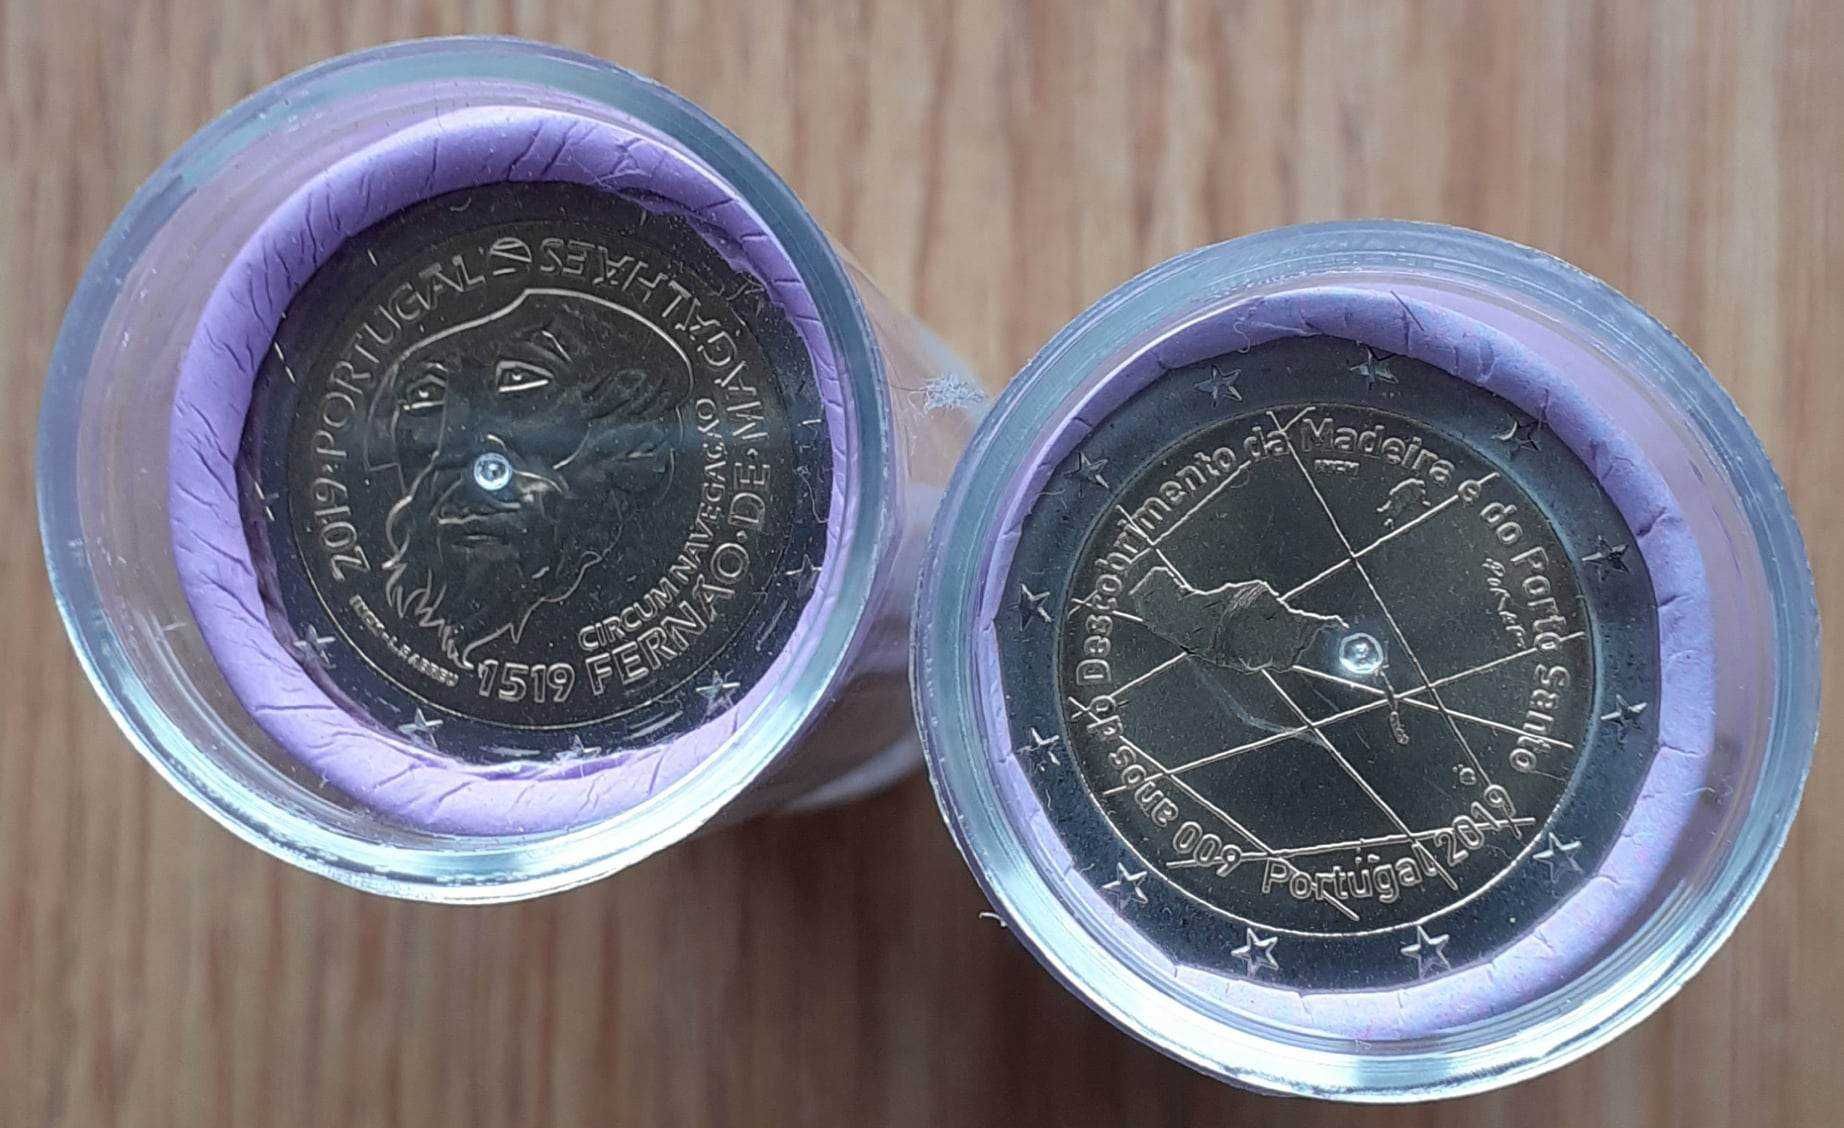 Rolo de 25 moedas comemorativas de 2 euros Portugal